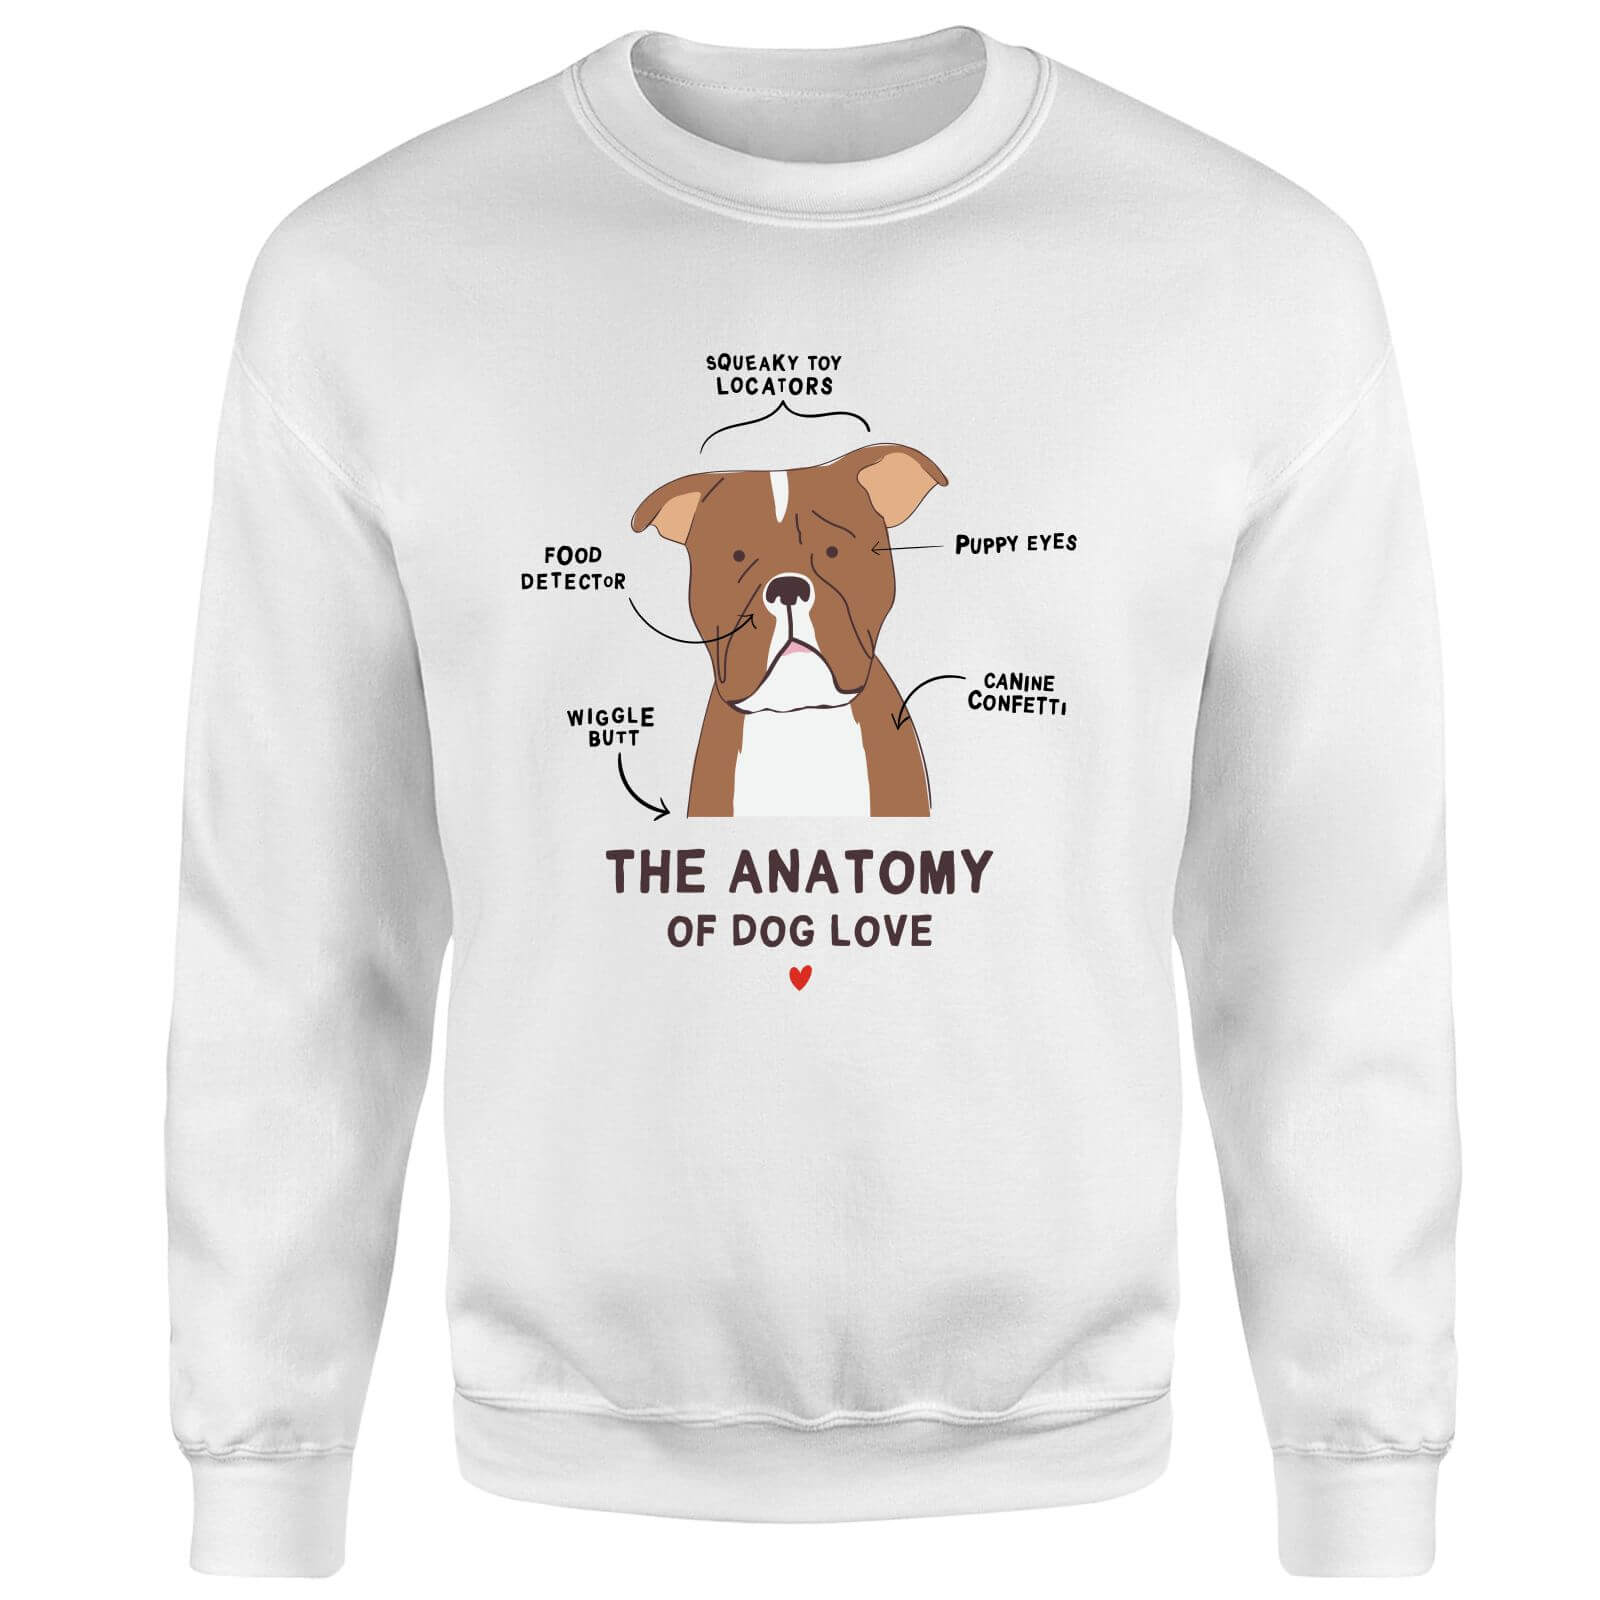 The Anatomy Of Dog Love Sweatshirt - White - S - White